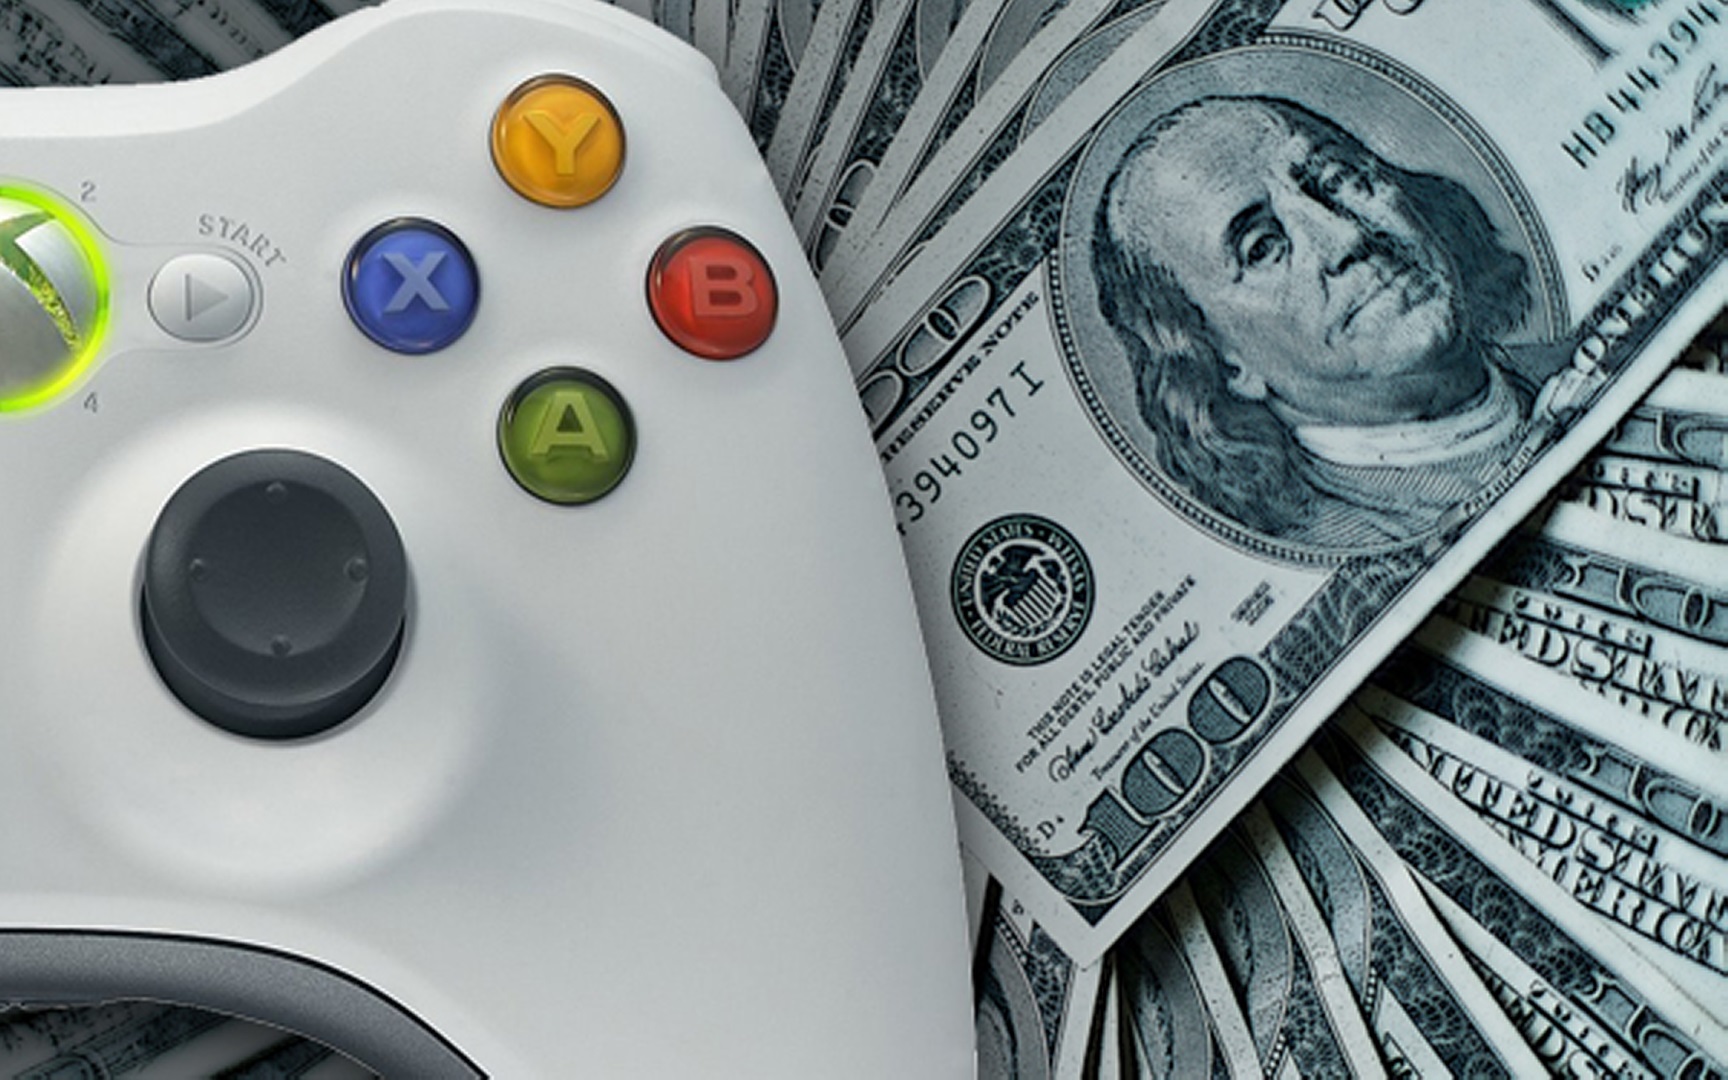 Aprende como se gana dinero online jugando videojuegos desde casa, demuestra que tan bueno eres y gana una audiencia para generar dinero.